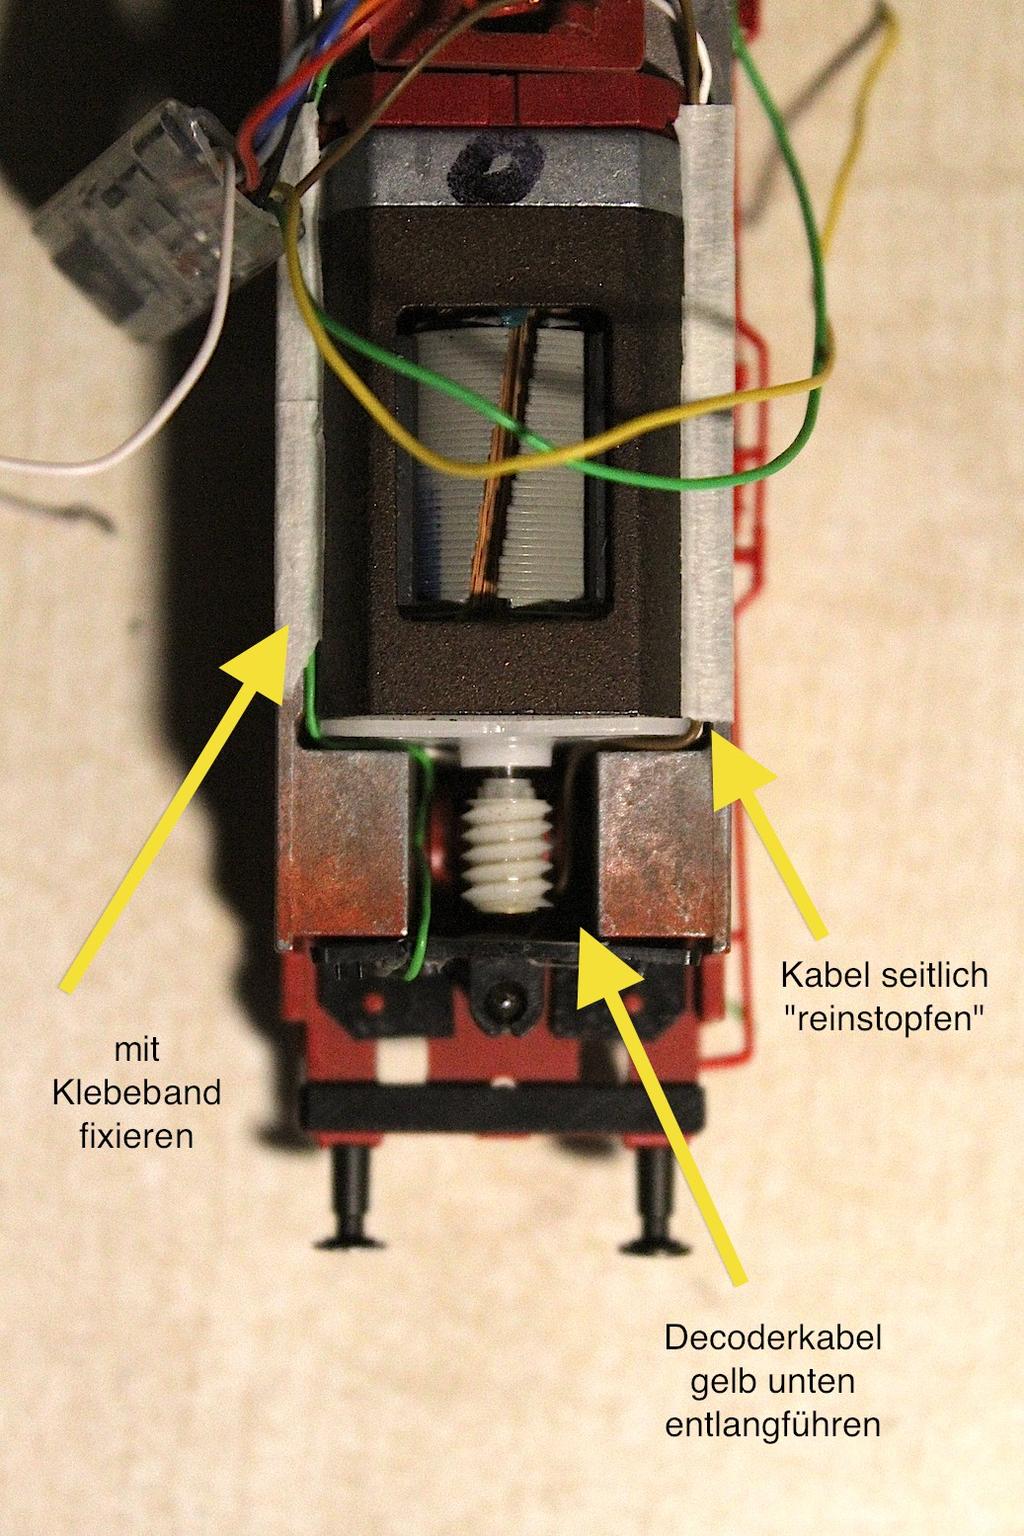 Bild 16: Verkabelung Beleuchtung im Tender Jetzt geht es weiter zur elektrischen Verbindung von Lok und Tender: Der Decoder findet zukünftig einen guten Platz unter der